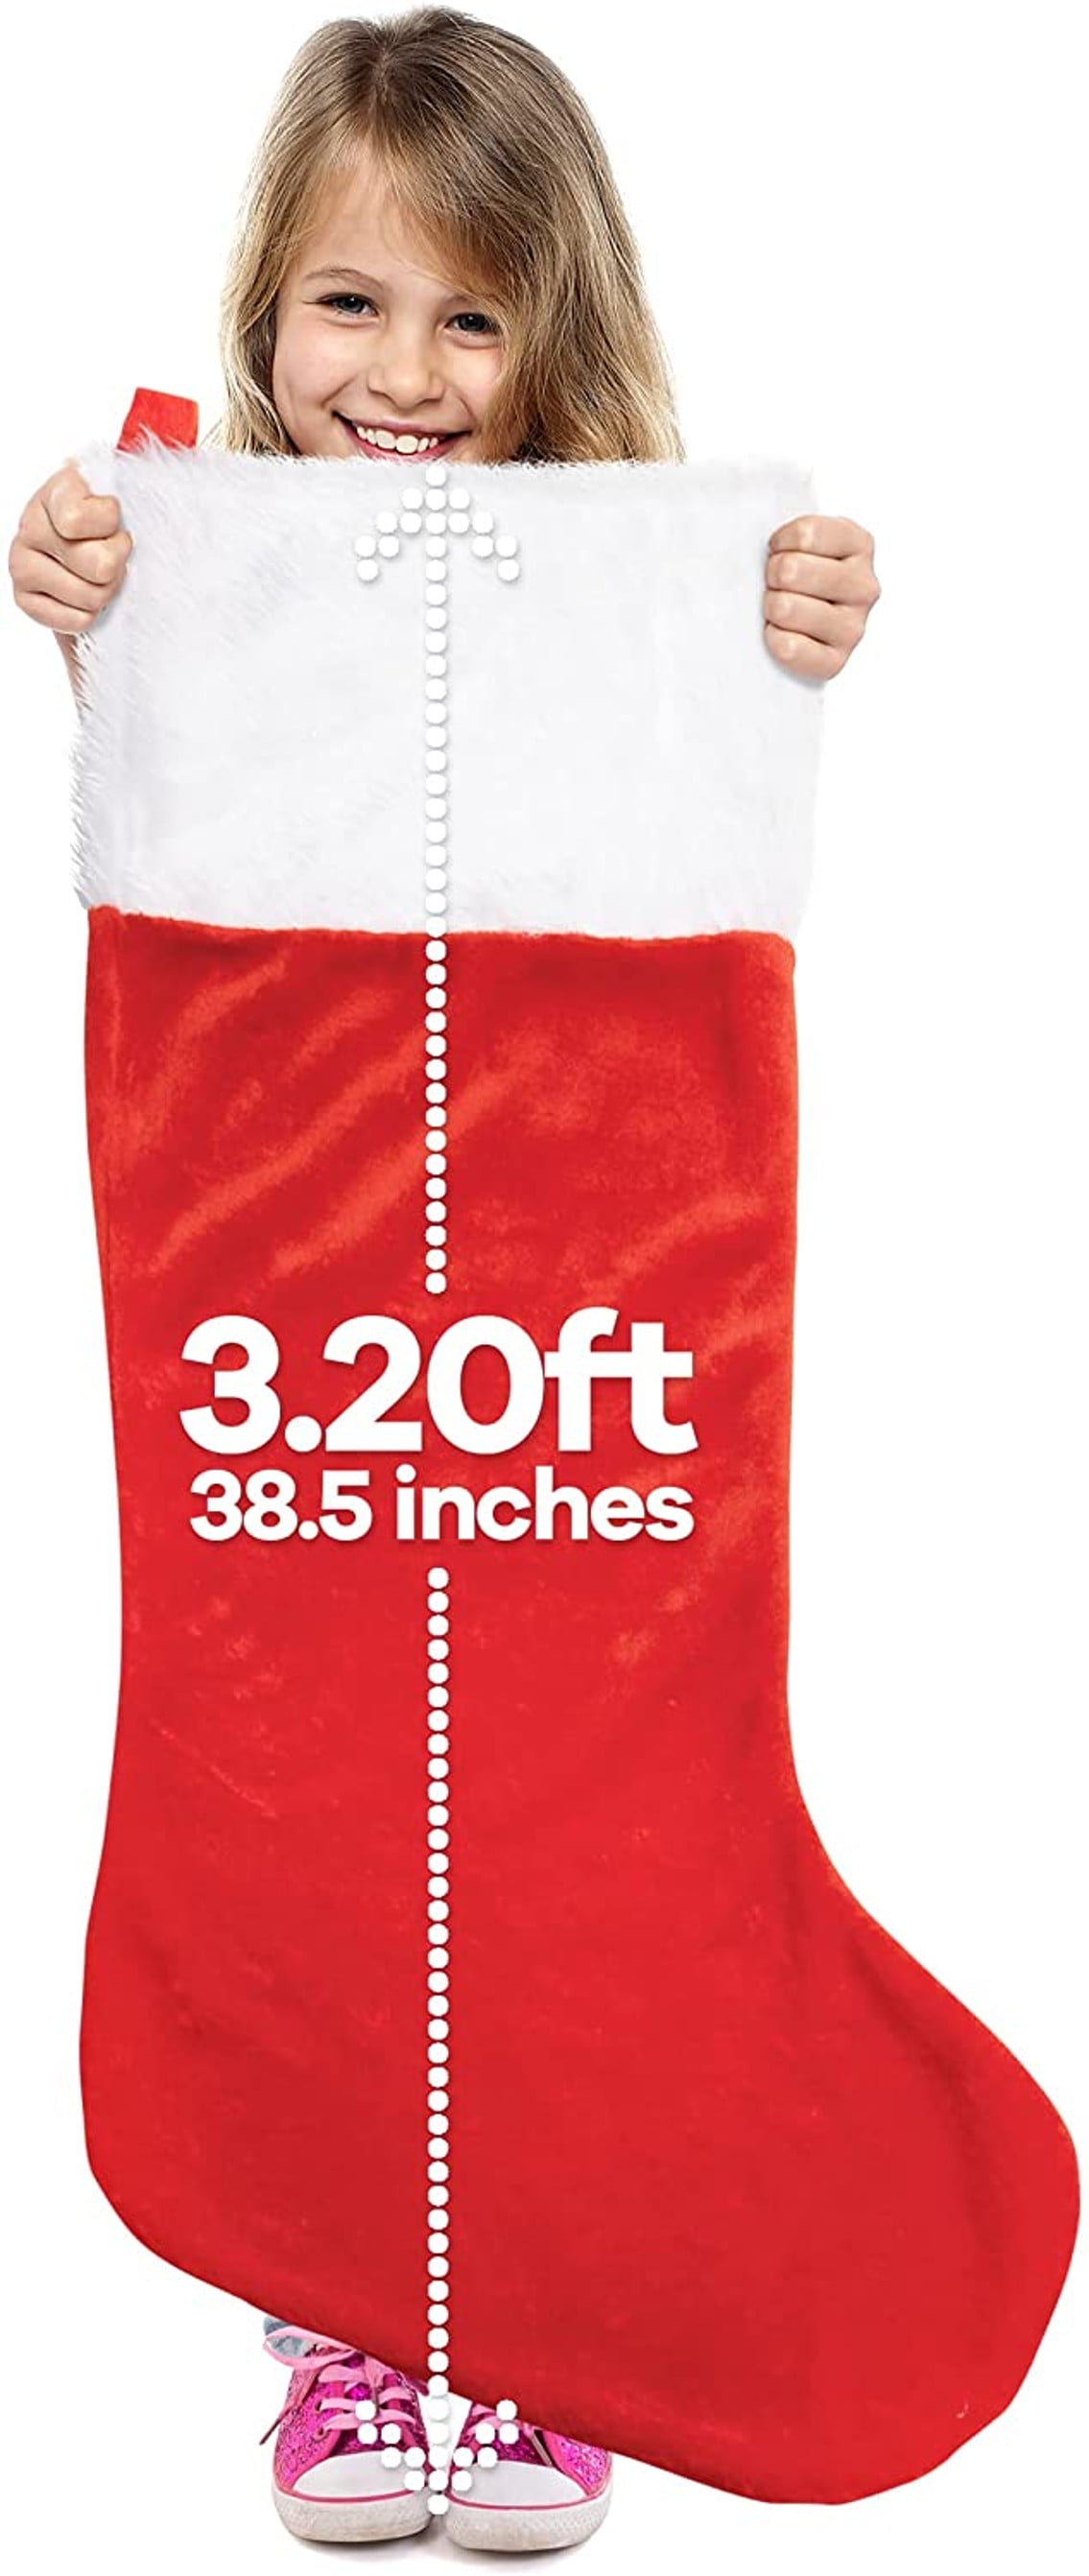 Giant Santa Sack Red 100x60 Sack Stocking Xmas Sack Gift Presents Bag Wholesale 